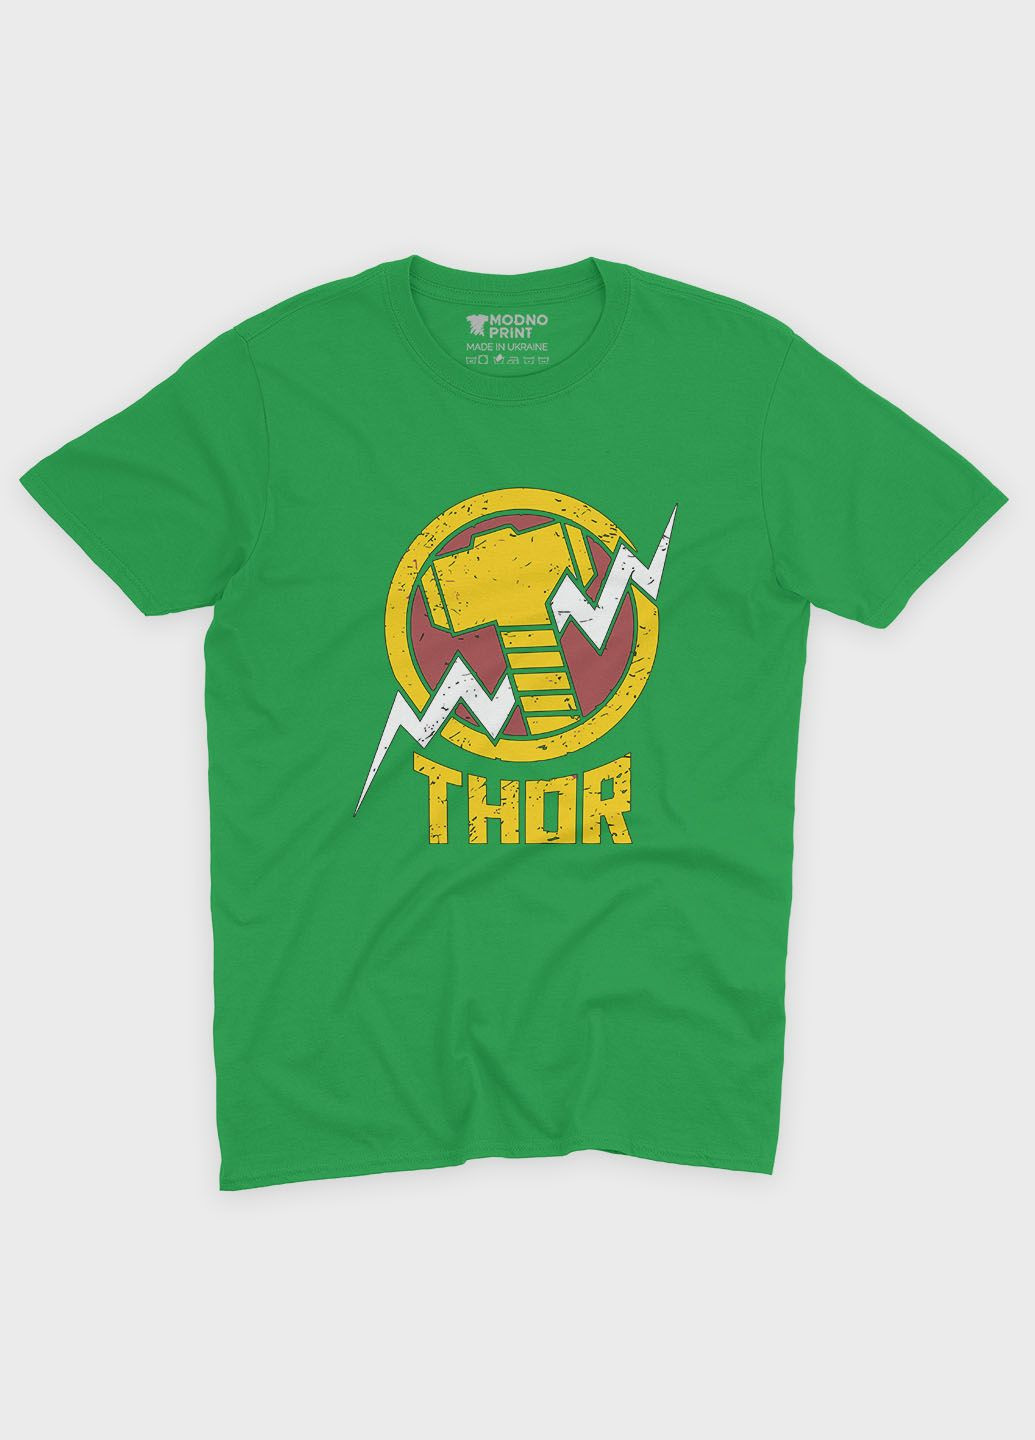 Зеленая демисезонная футболка для мальчика с принтом супергероя - тор (ts001-1-keg-006-024-006-b) Modno